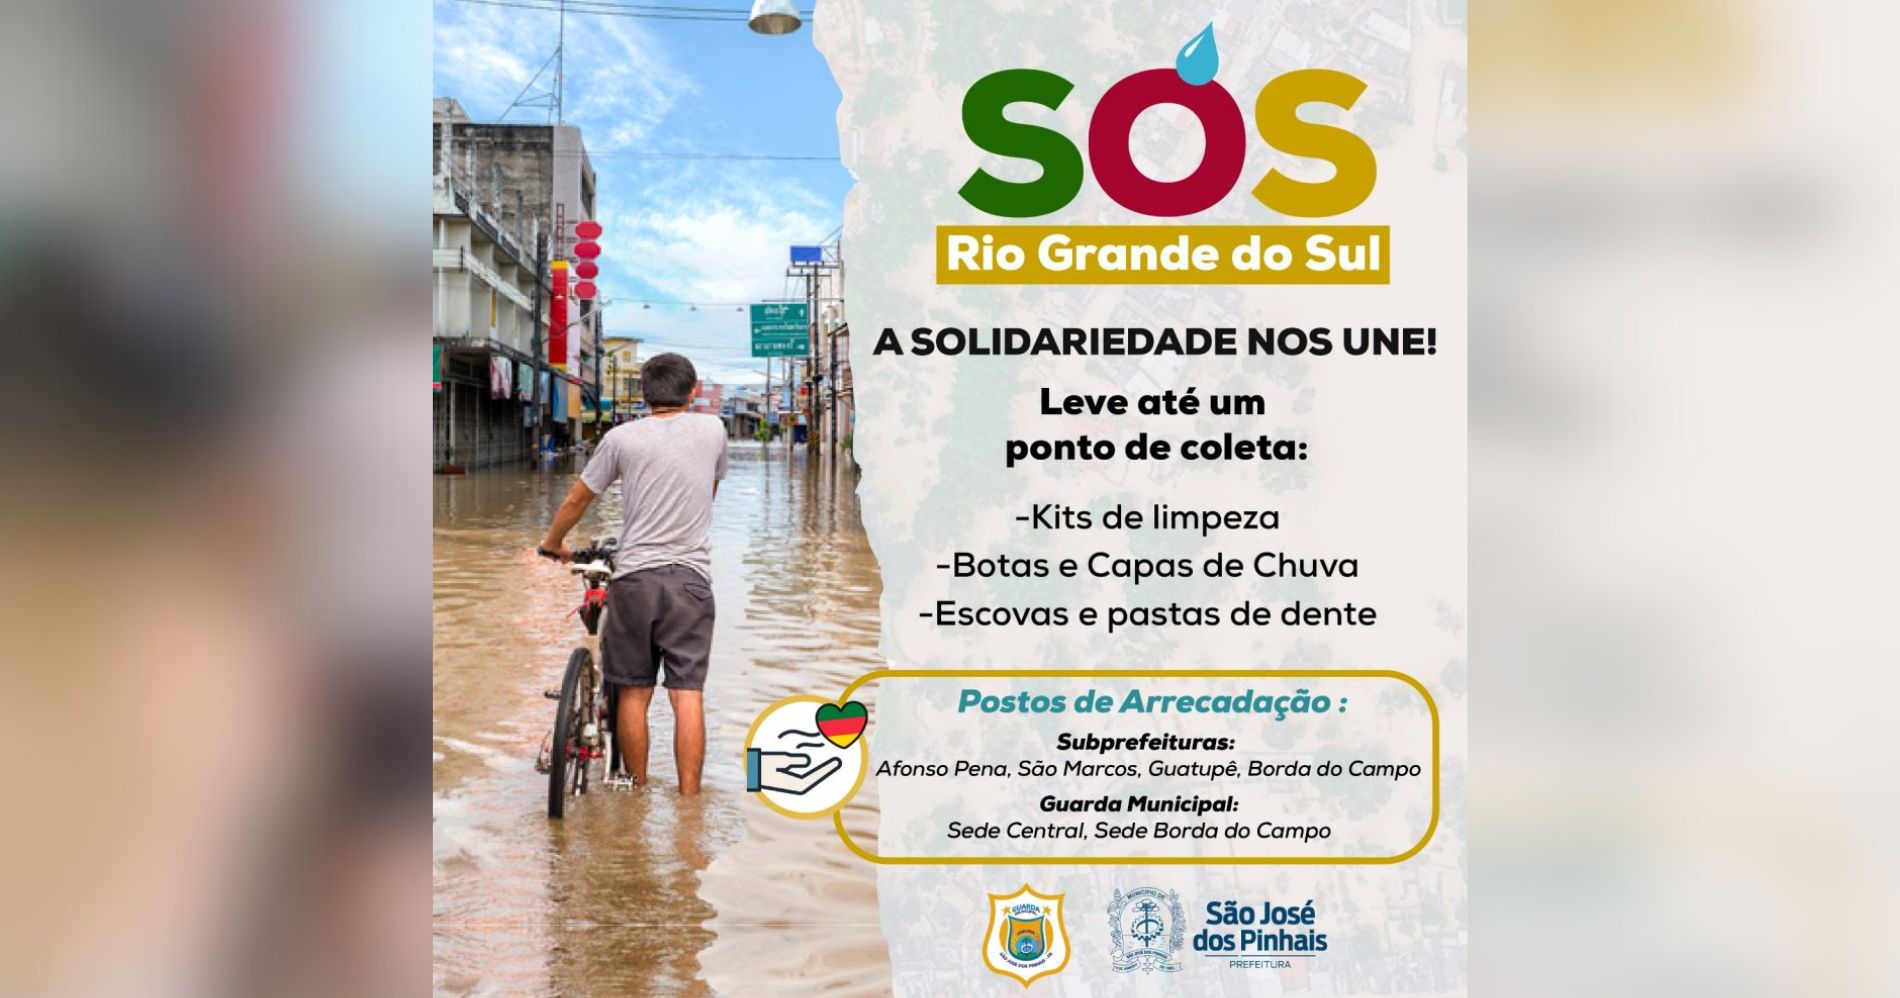 São José dos Pinhais faz campanha de doações para auxiliar vítimas do ciclone no Rio Grande do Sul